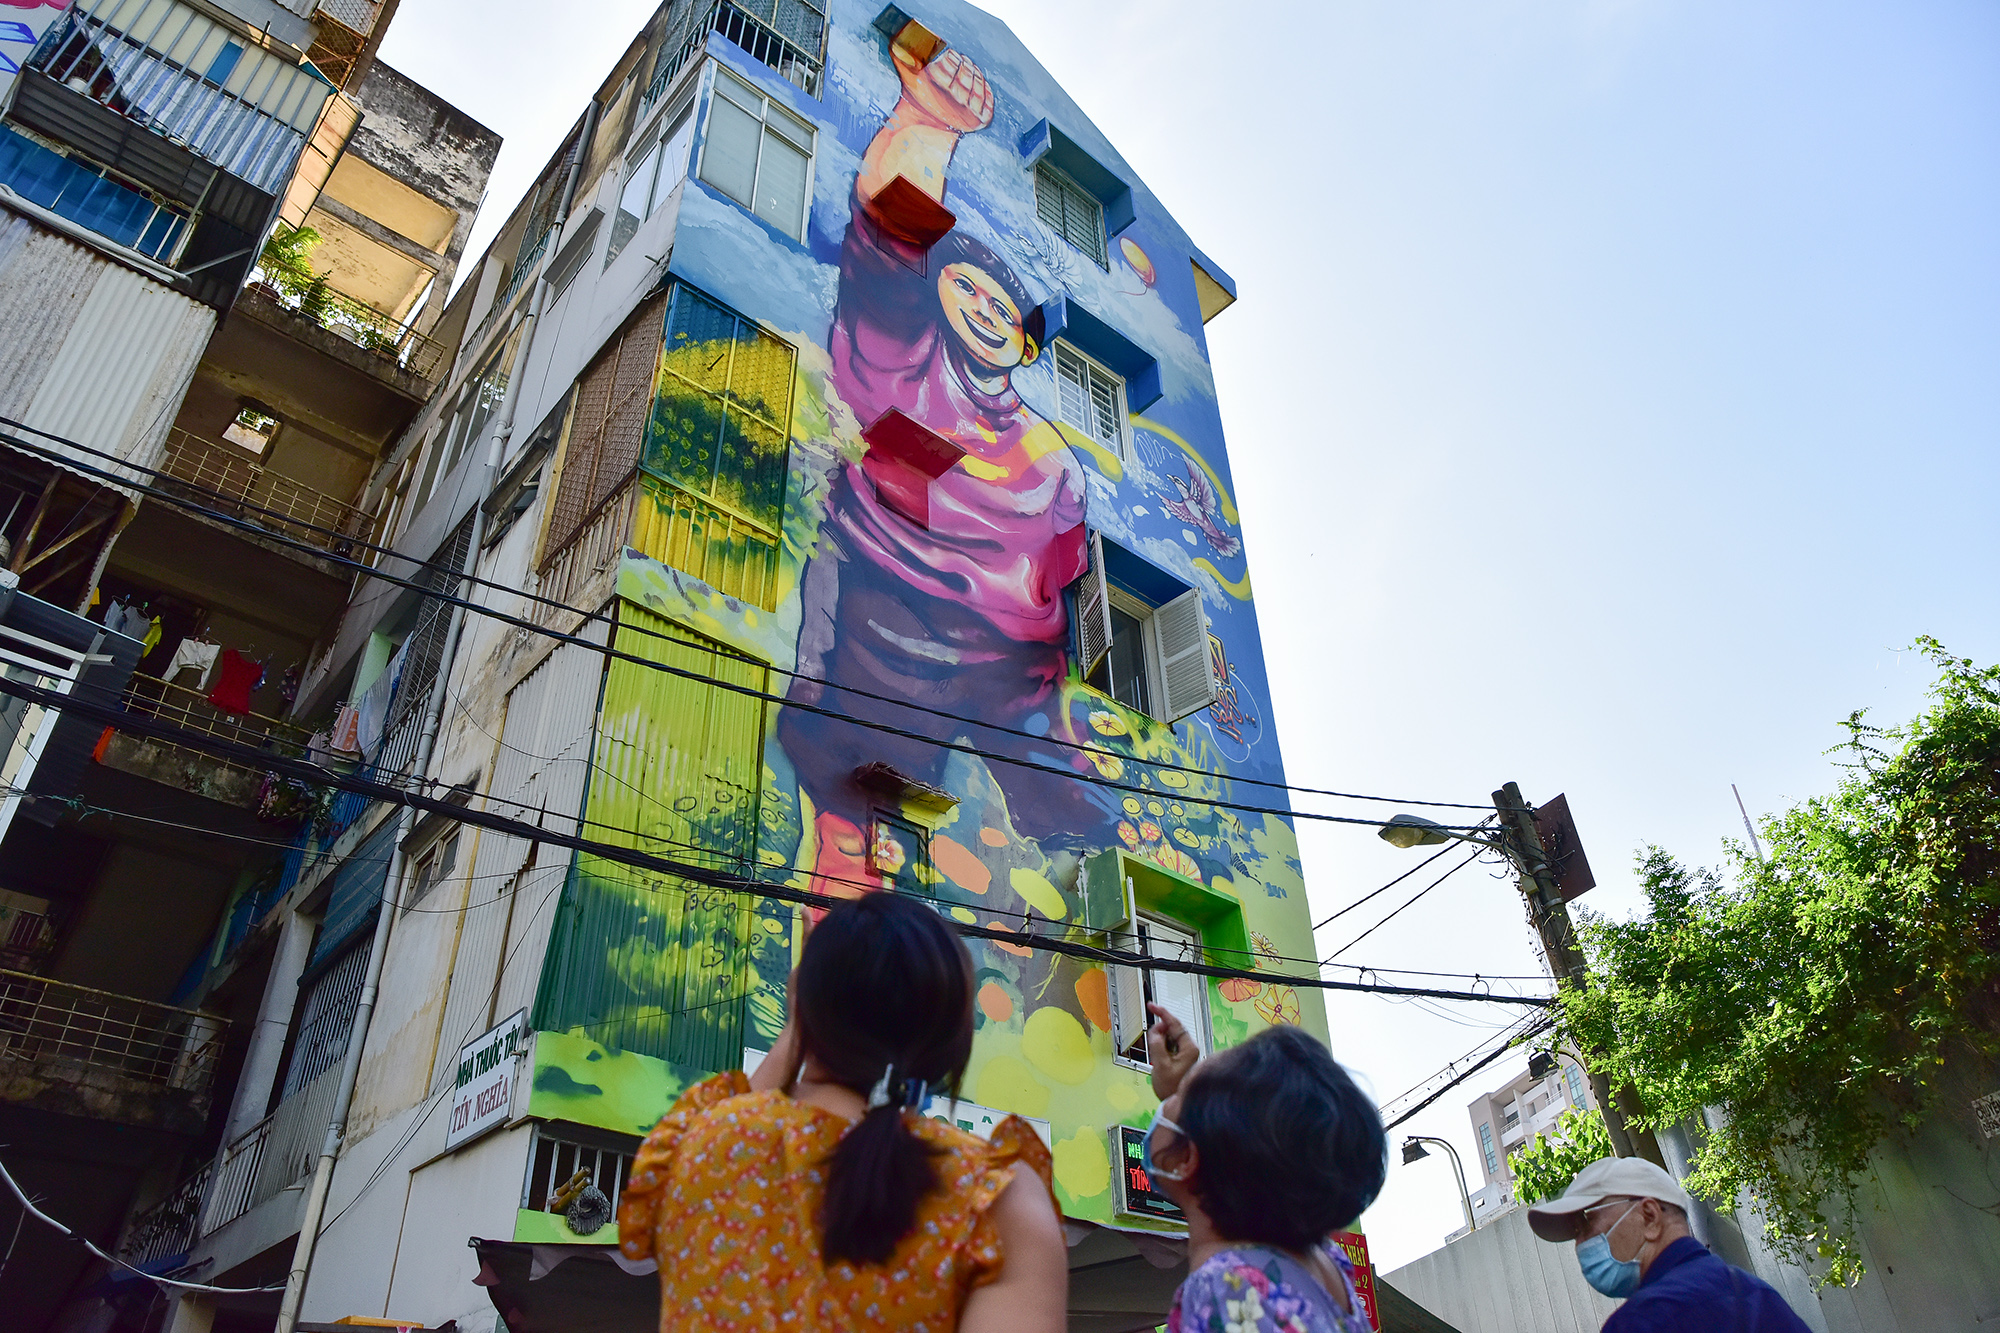 用吊車在胡志明市的公寓牆上畫了一幅巨大的畫。HCM - 12